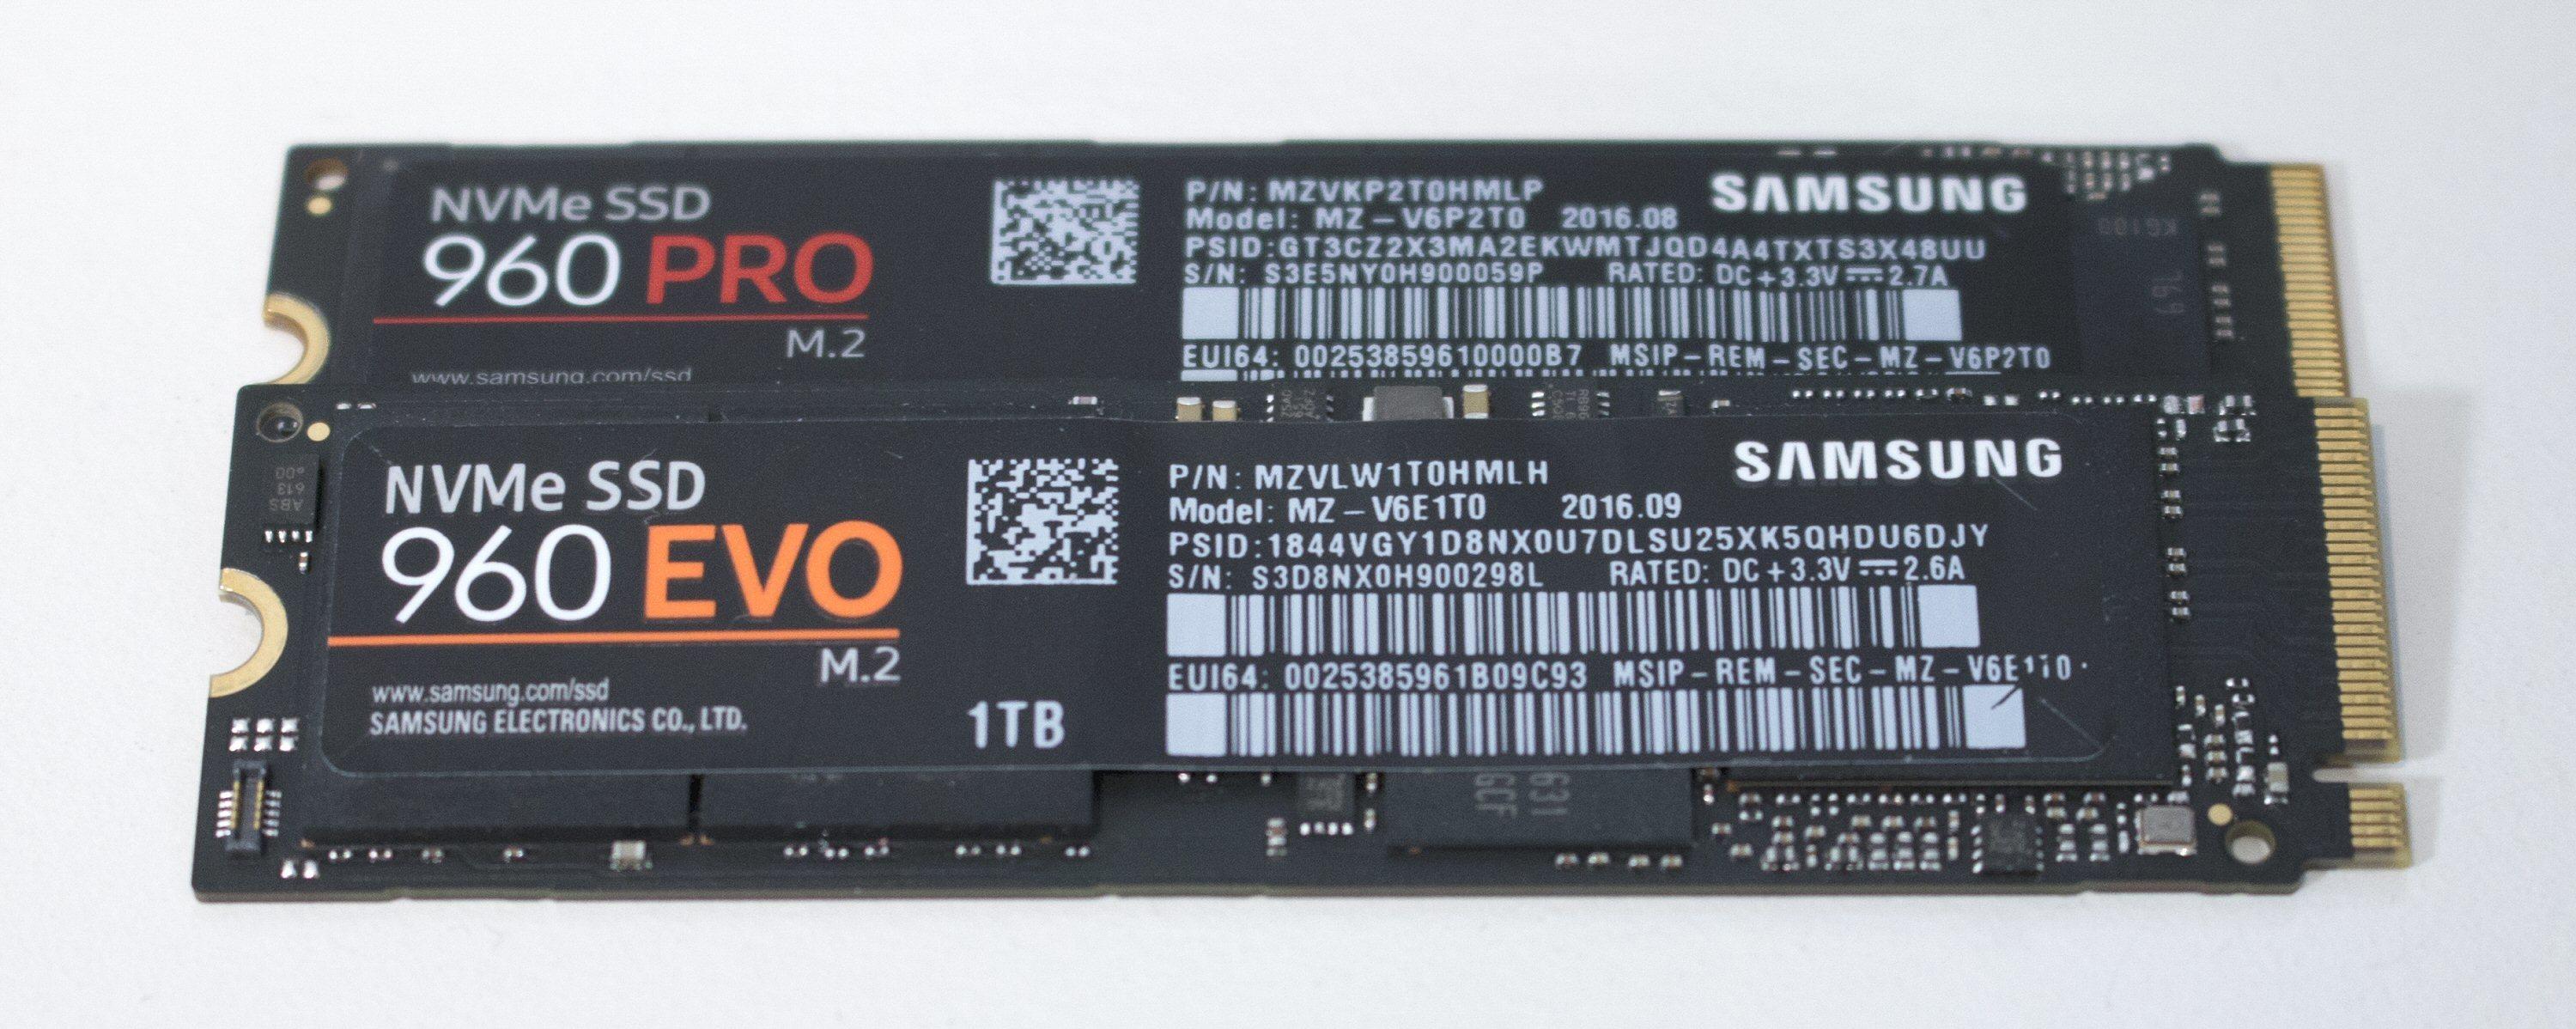 960 Pro er en bedre SSD, men koster i skrivende stund også mellom tretti til førti prosent mer enn 960 Evo.